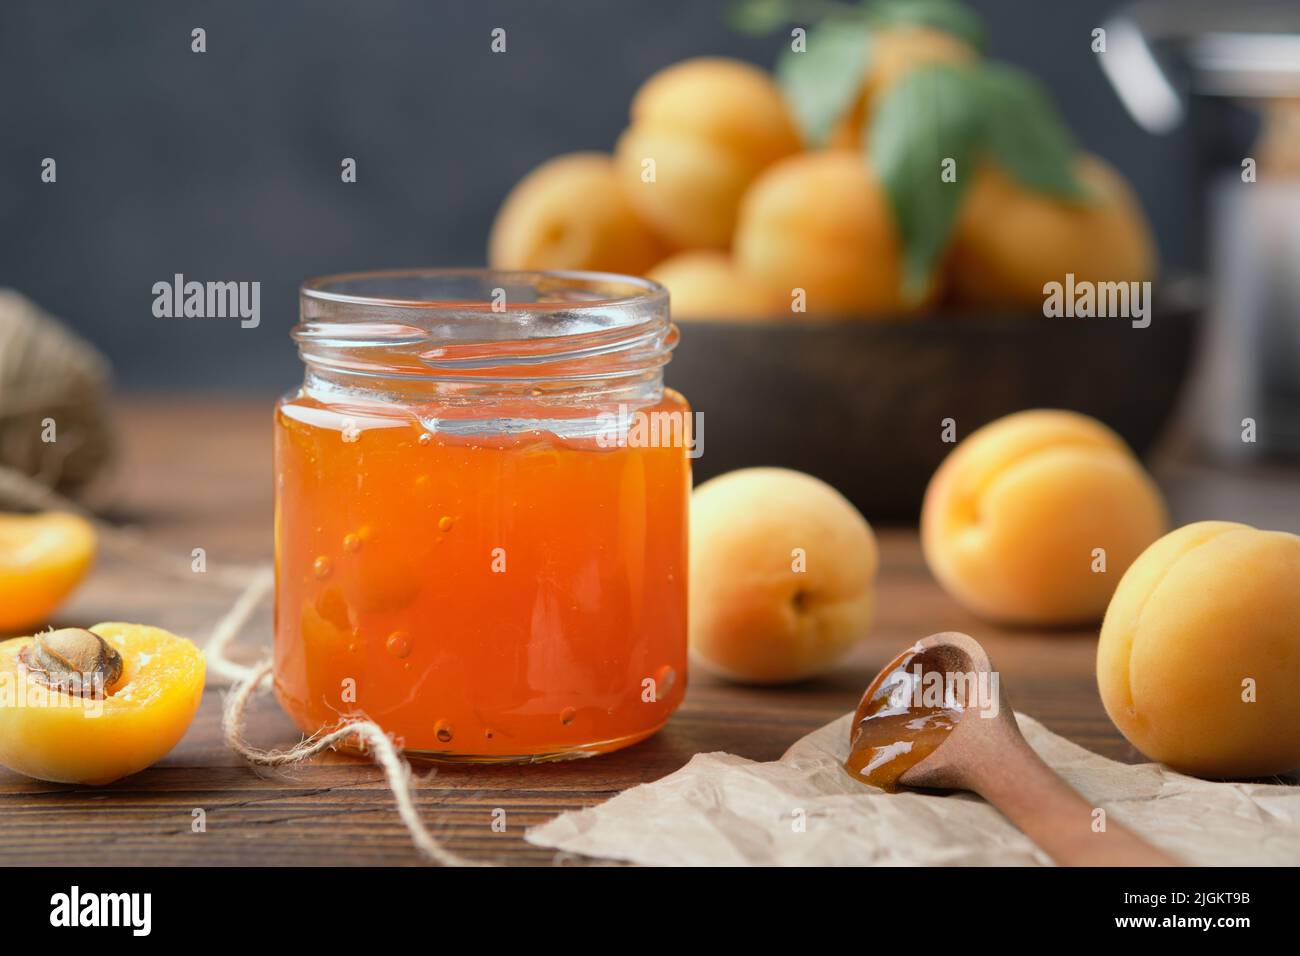 Tarro de mermelada casera de albaricoque y frutas maduras de albaricoque sobre la mesa de la cocina. Foto de stock